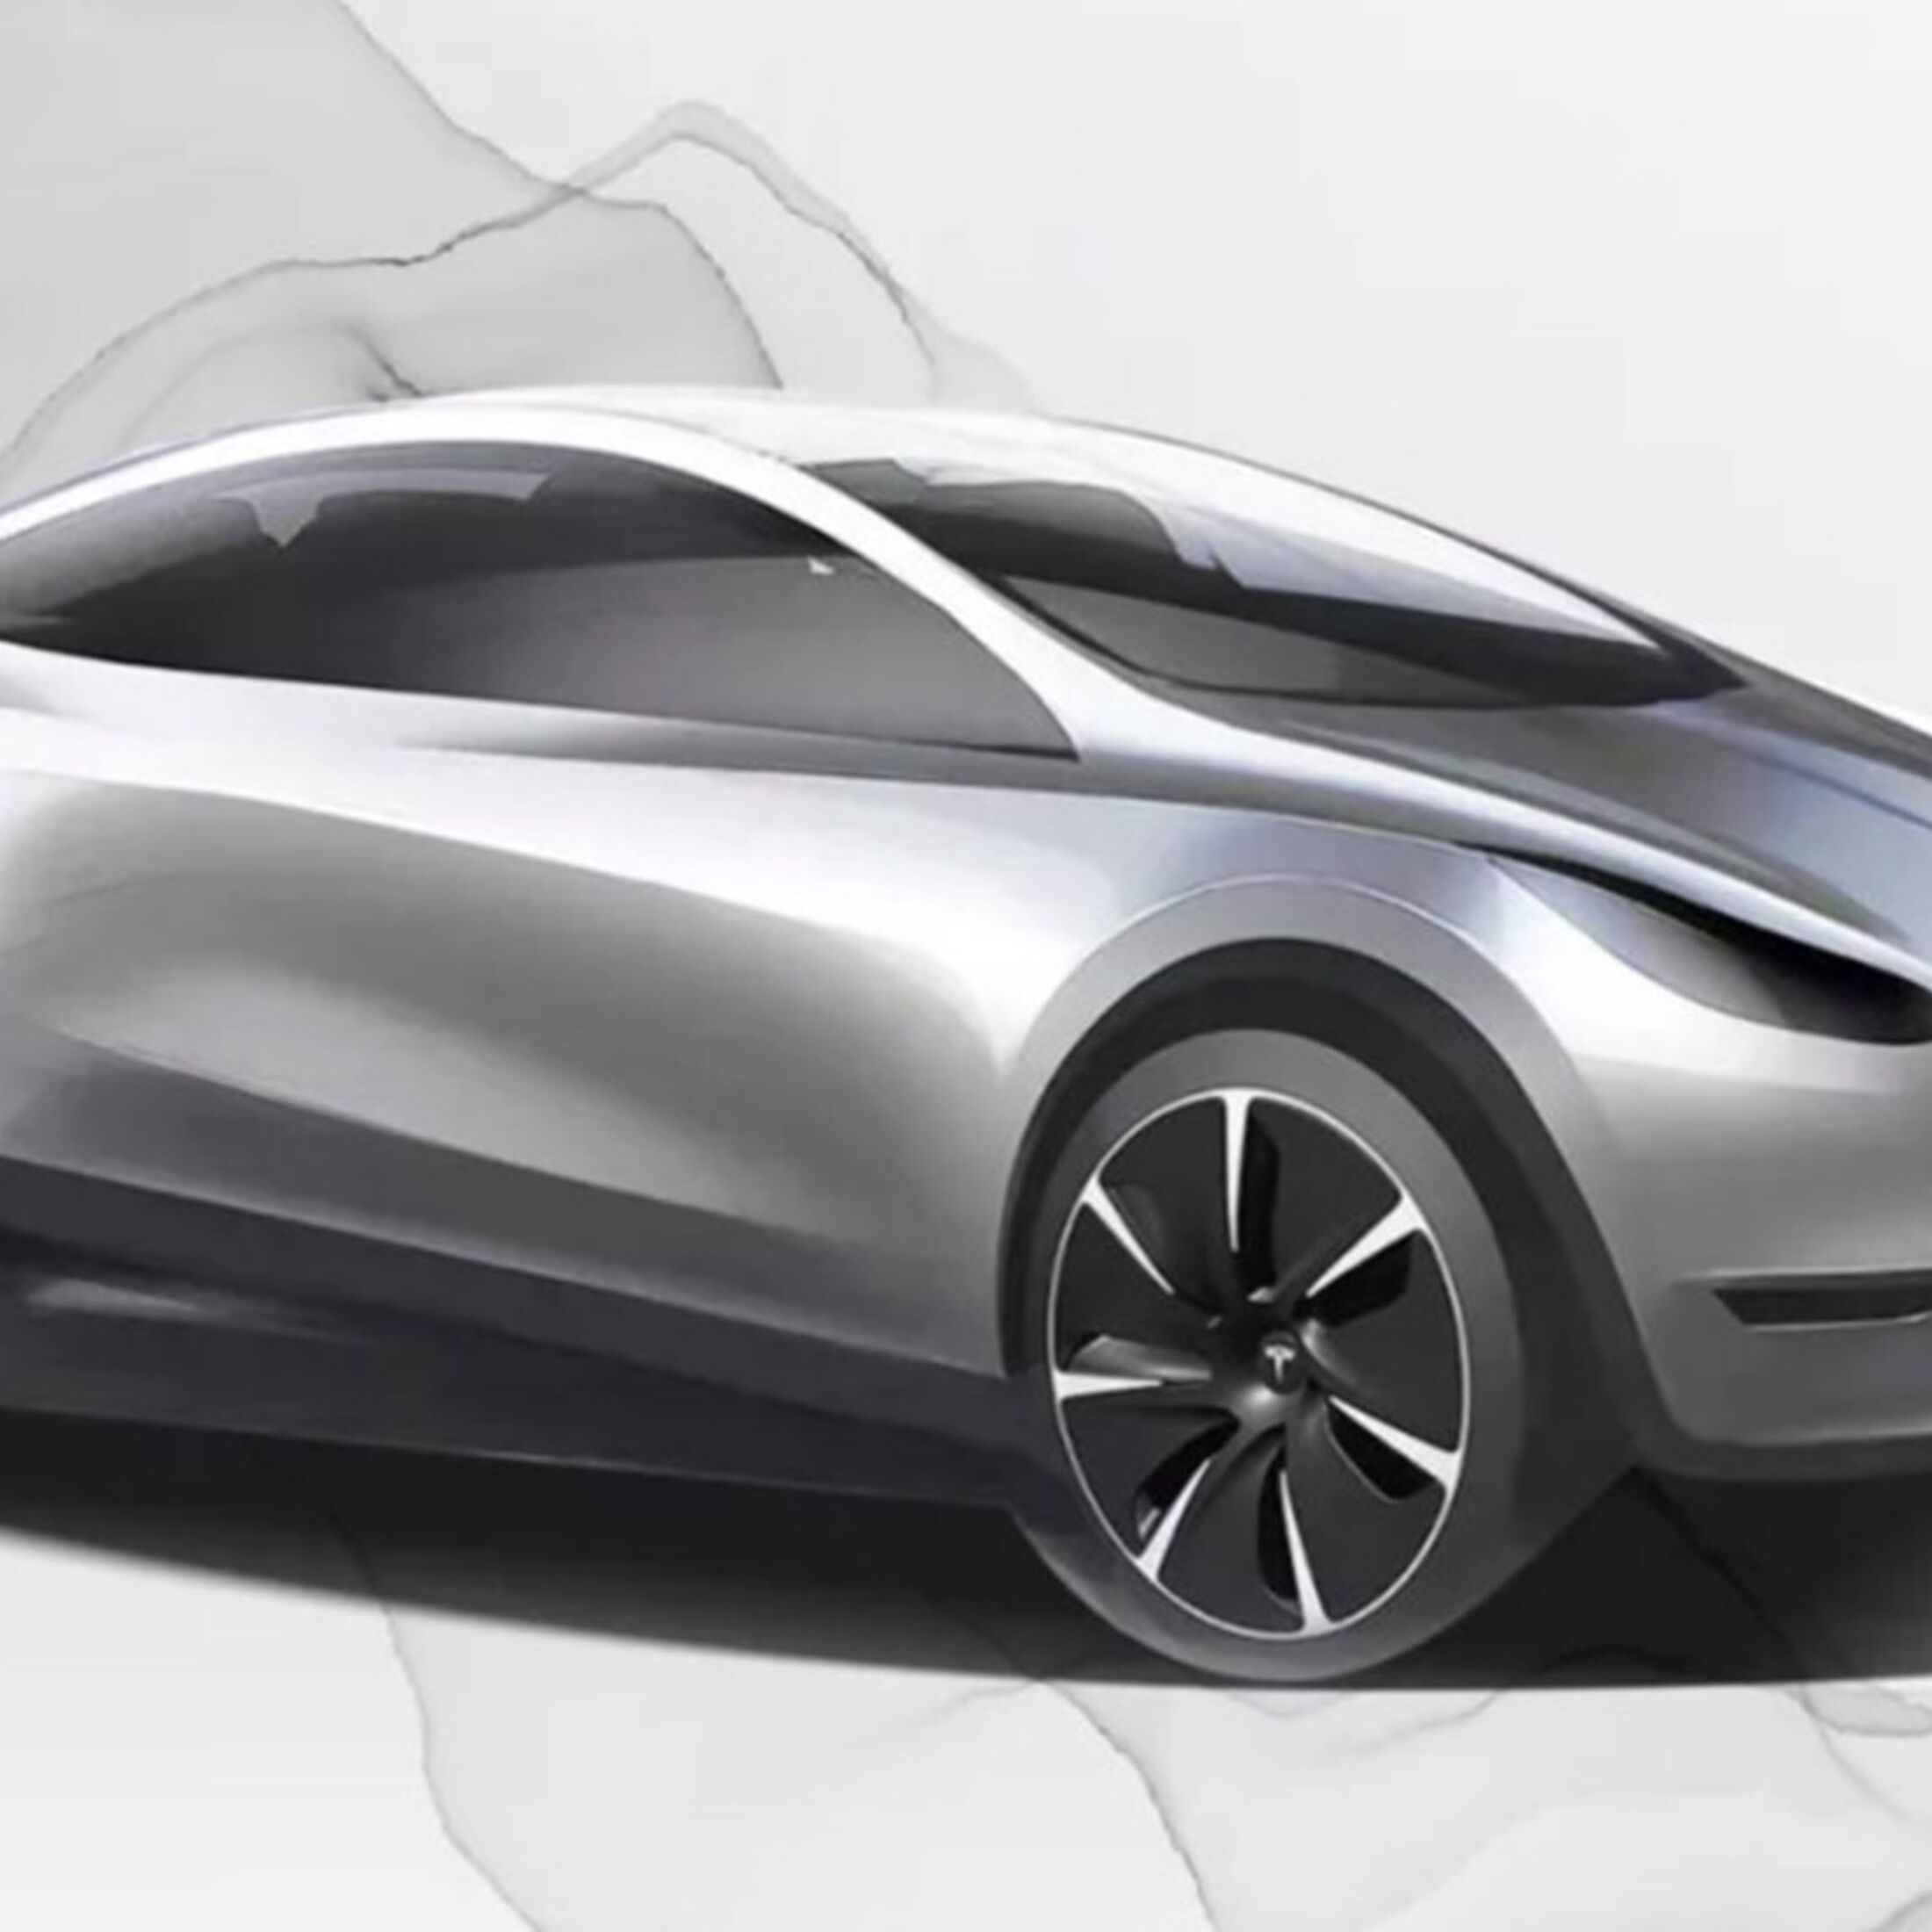 https://imgr1.auto-motor-und-sport.de/Tesla-Baby-Model-3-jsonLd1x1-d3b6099c-1662859.jpg